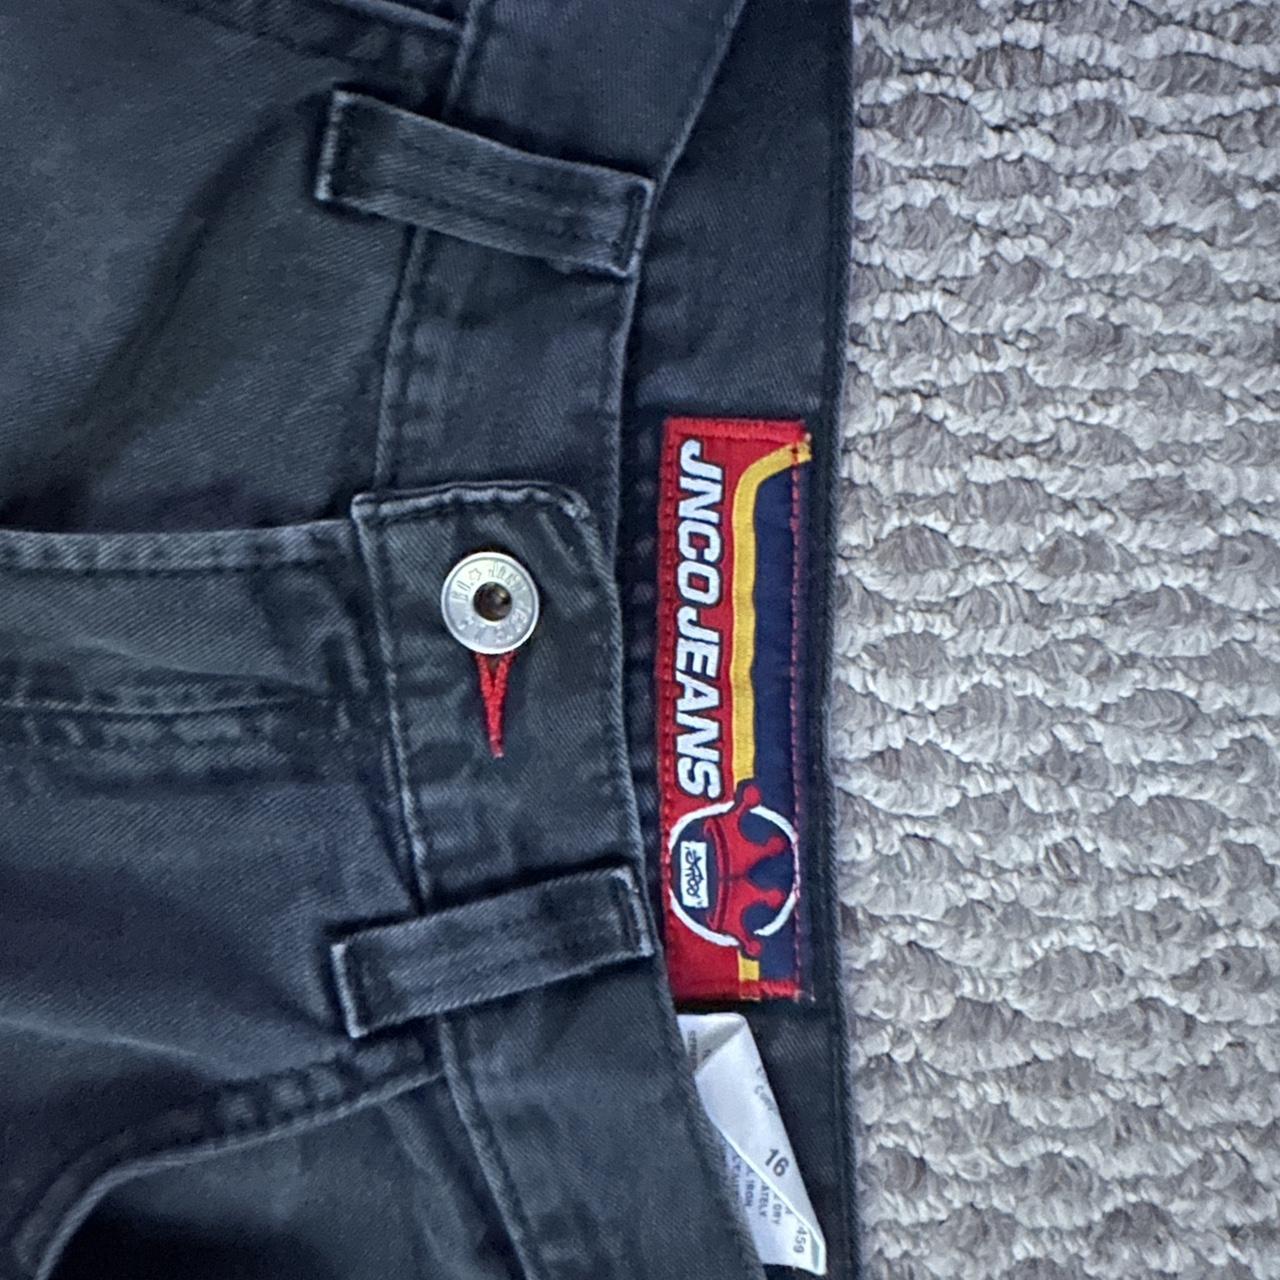 Sick Vintage Jnco Jeans Carpenter pants double big... - Depop